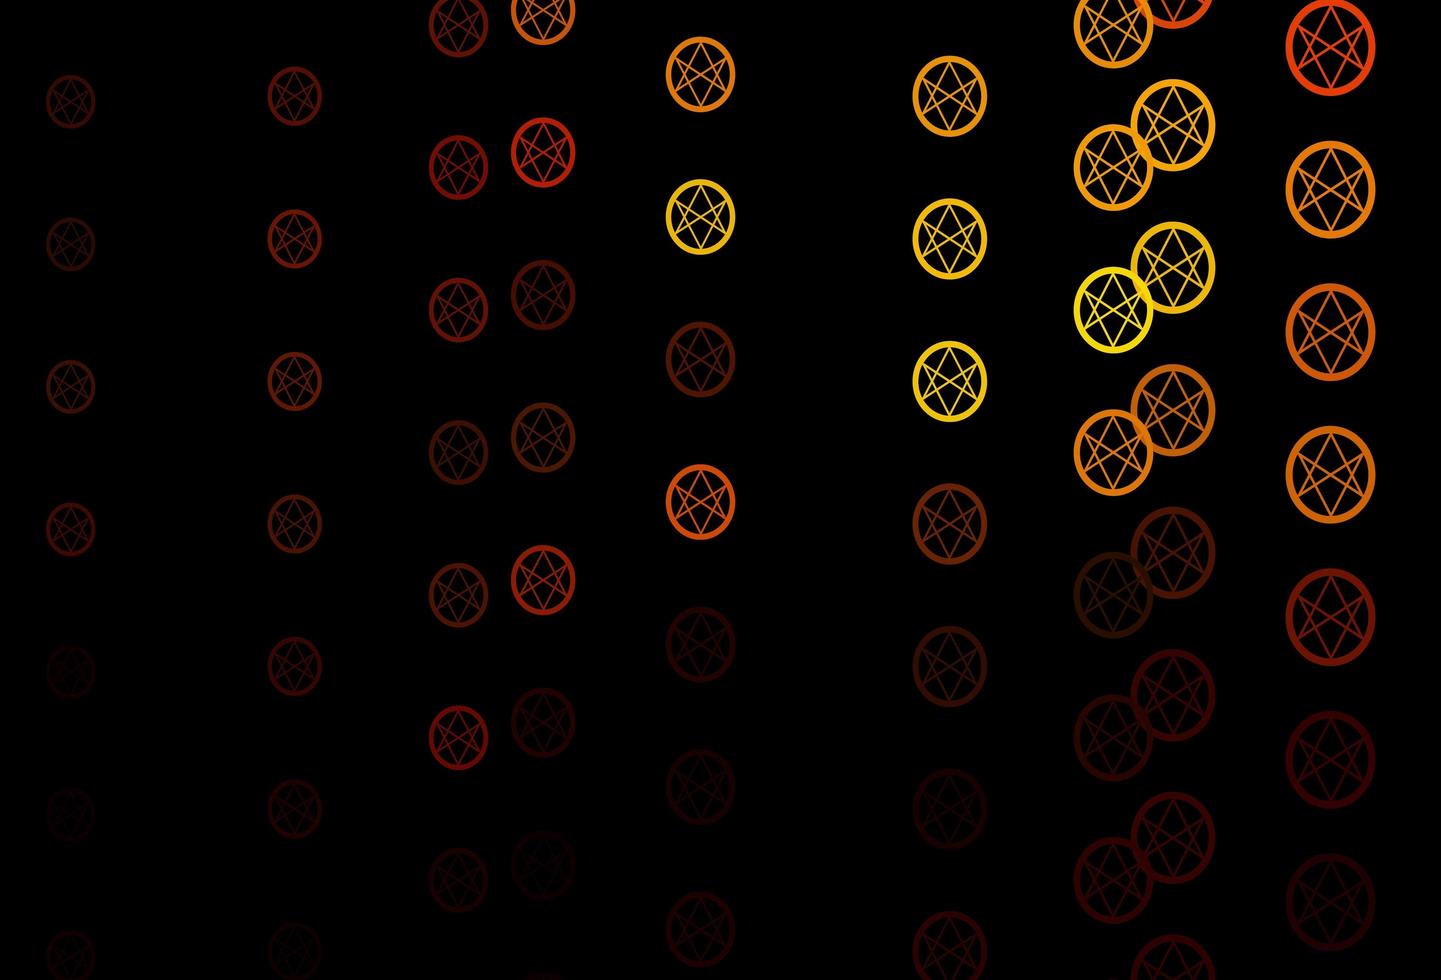 Telón de fondo de vector amarillo oscuro con símbolos de misterio.